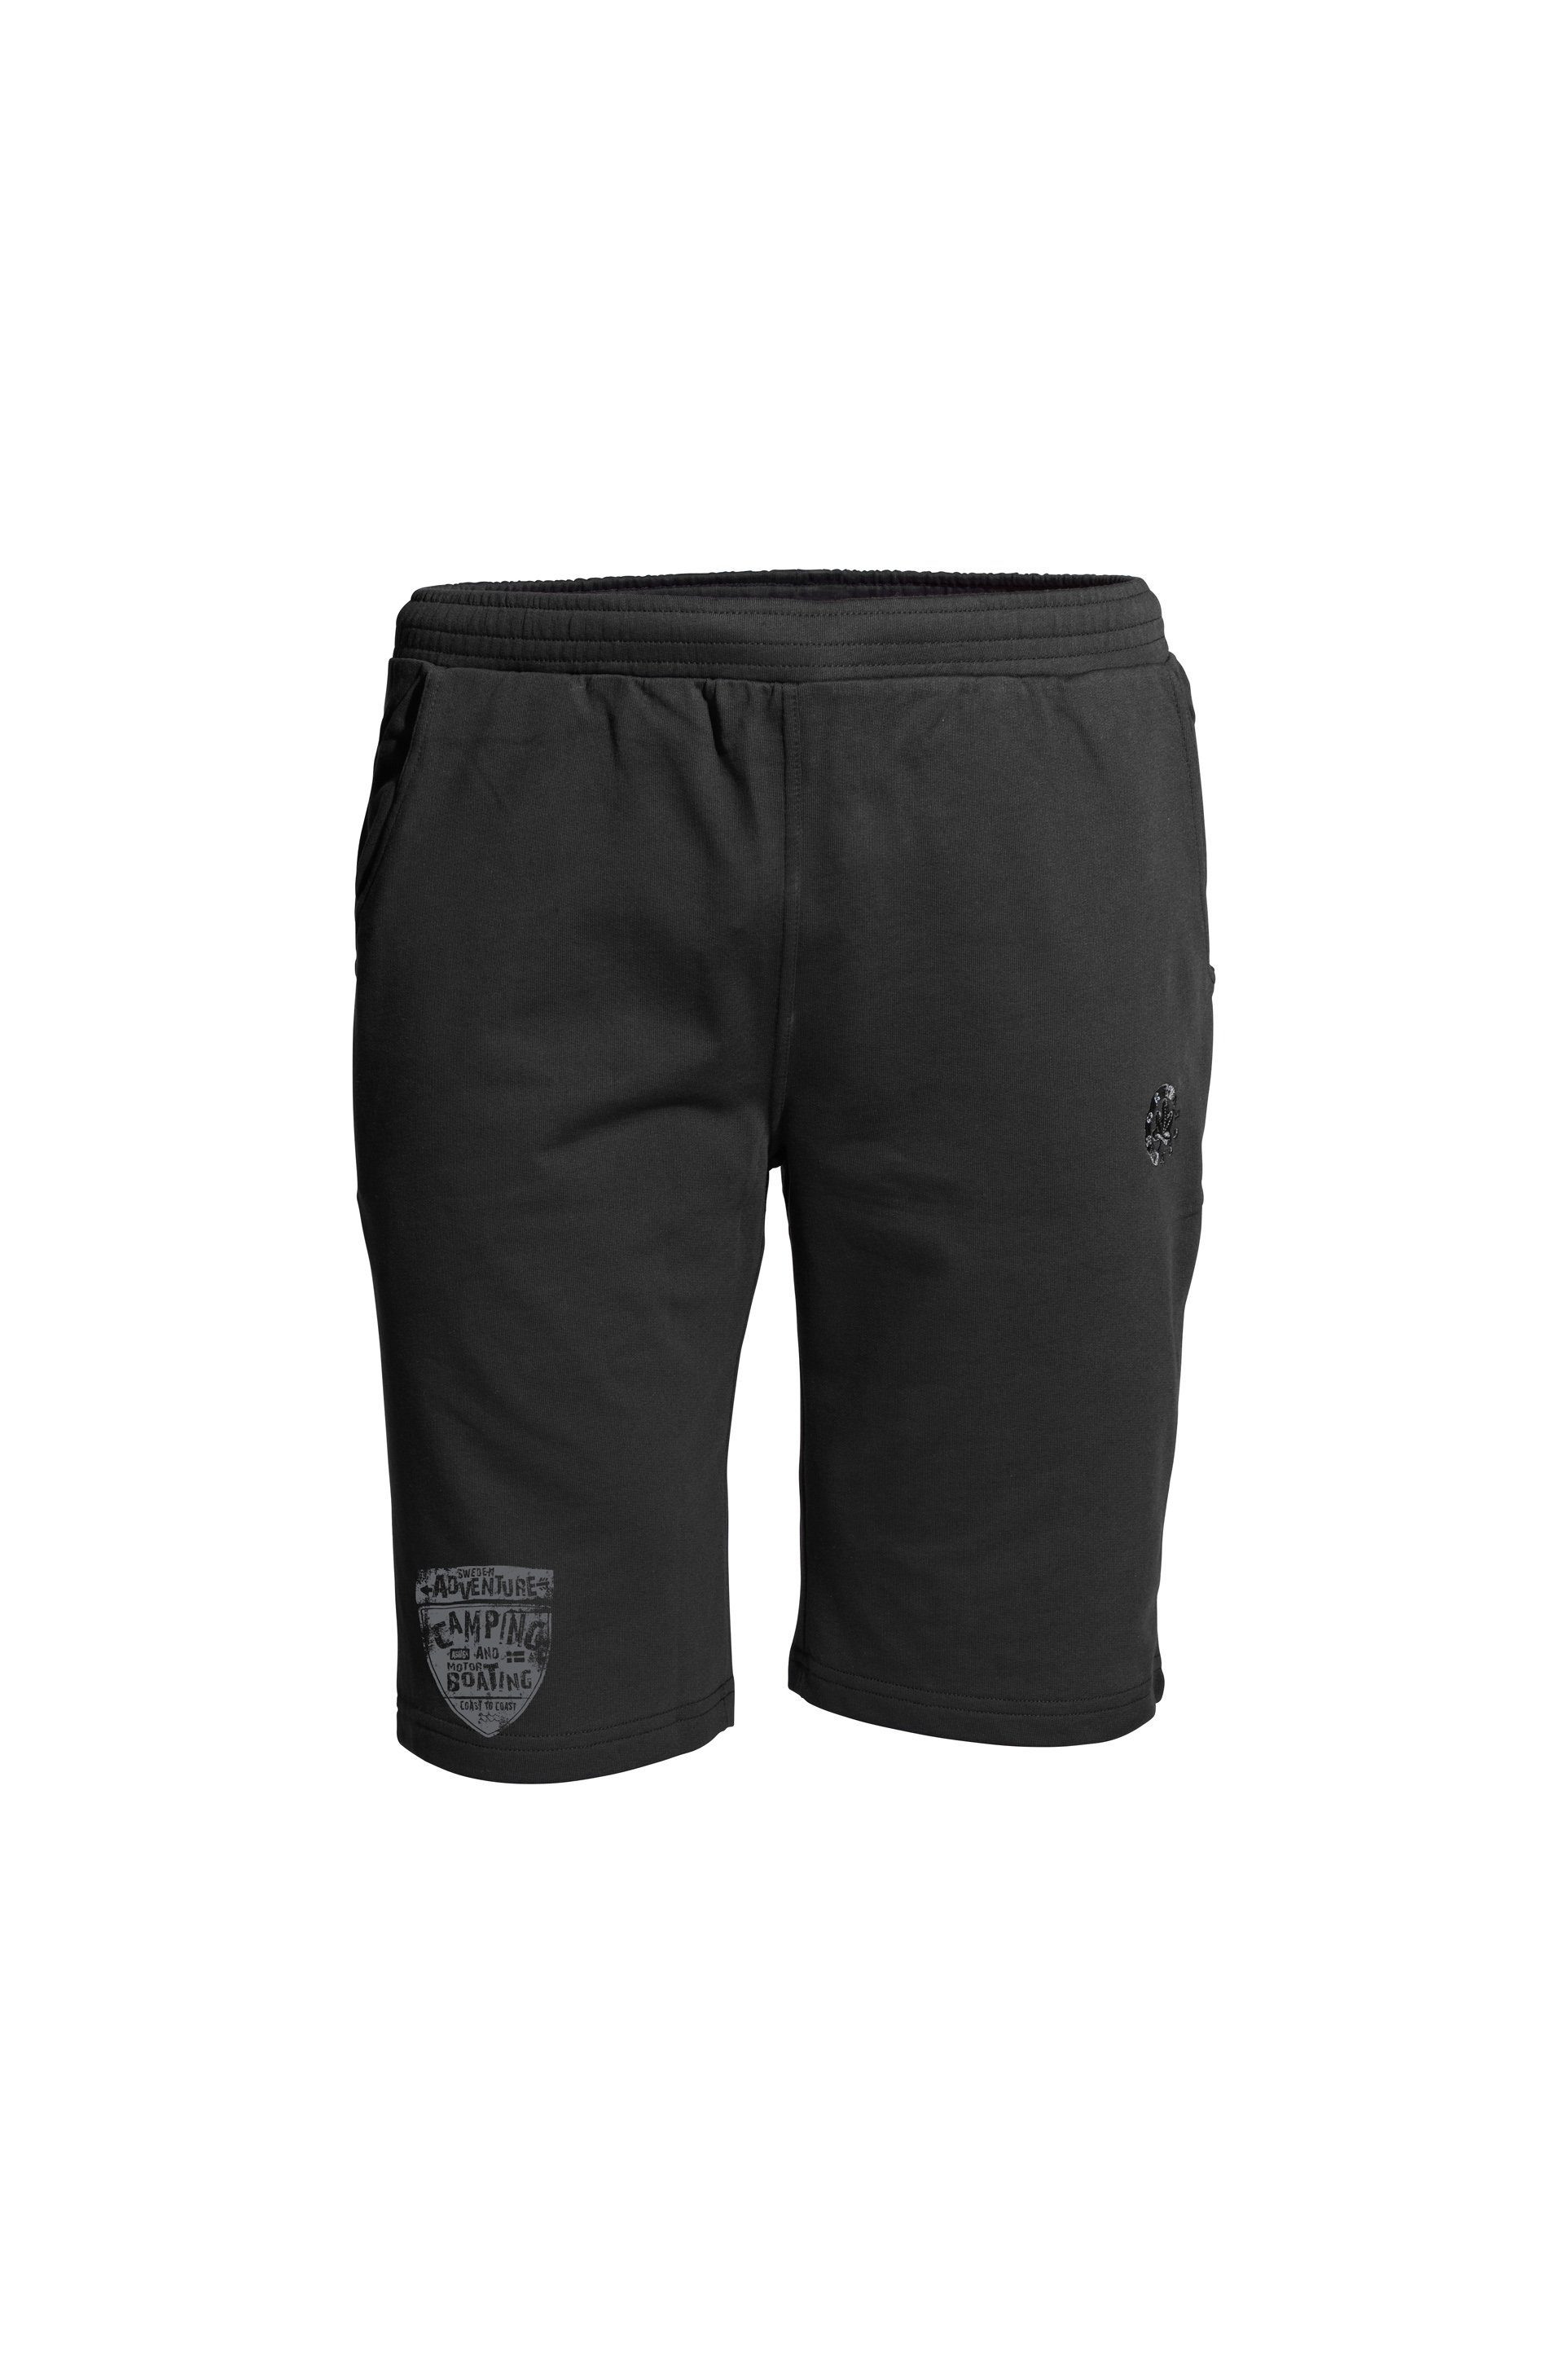 AHORN SPORTSWEAR Shorts CAMPING mit am sportlichem Bein schwarz Print